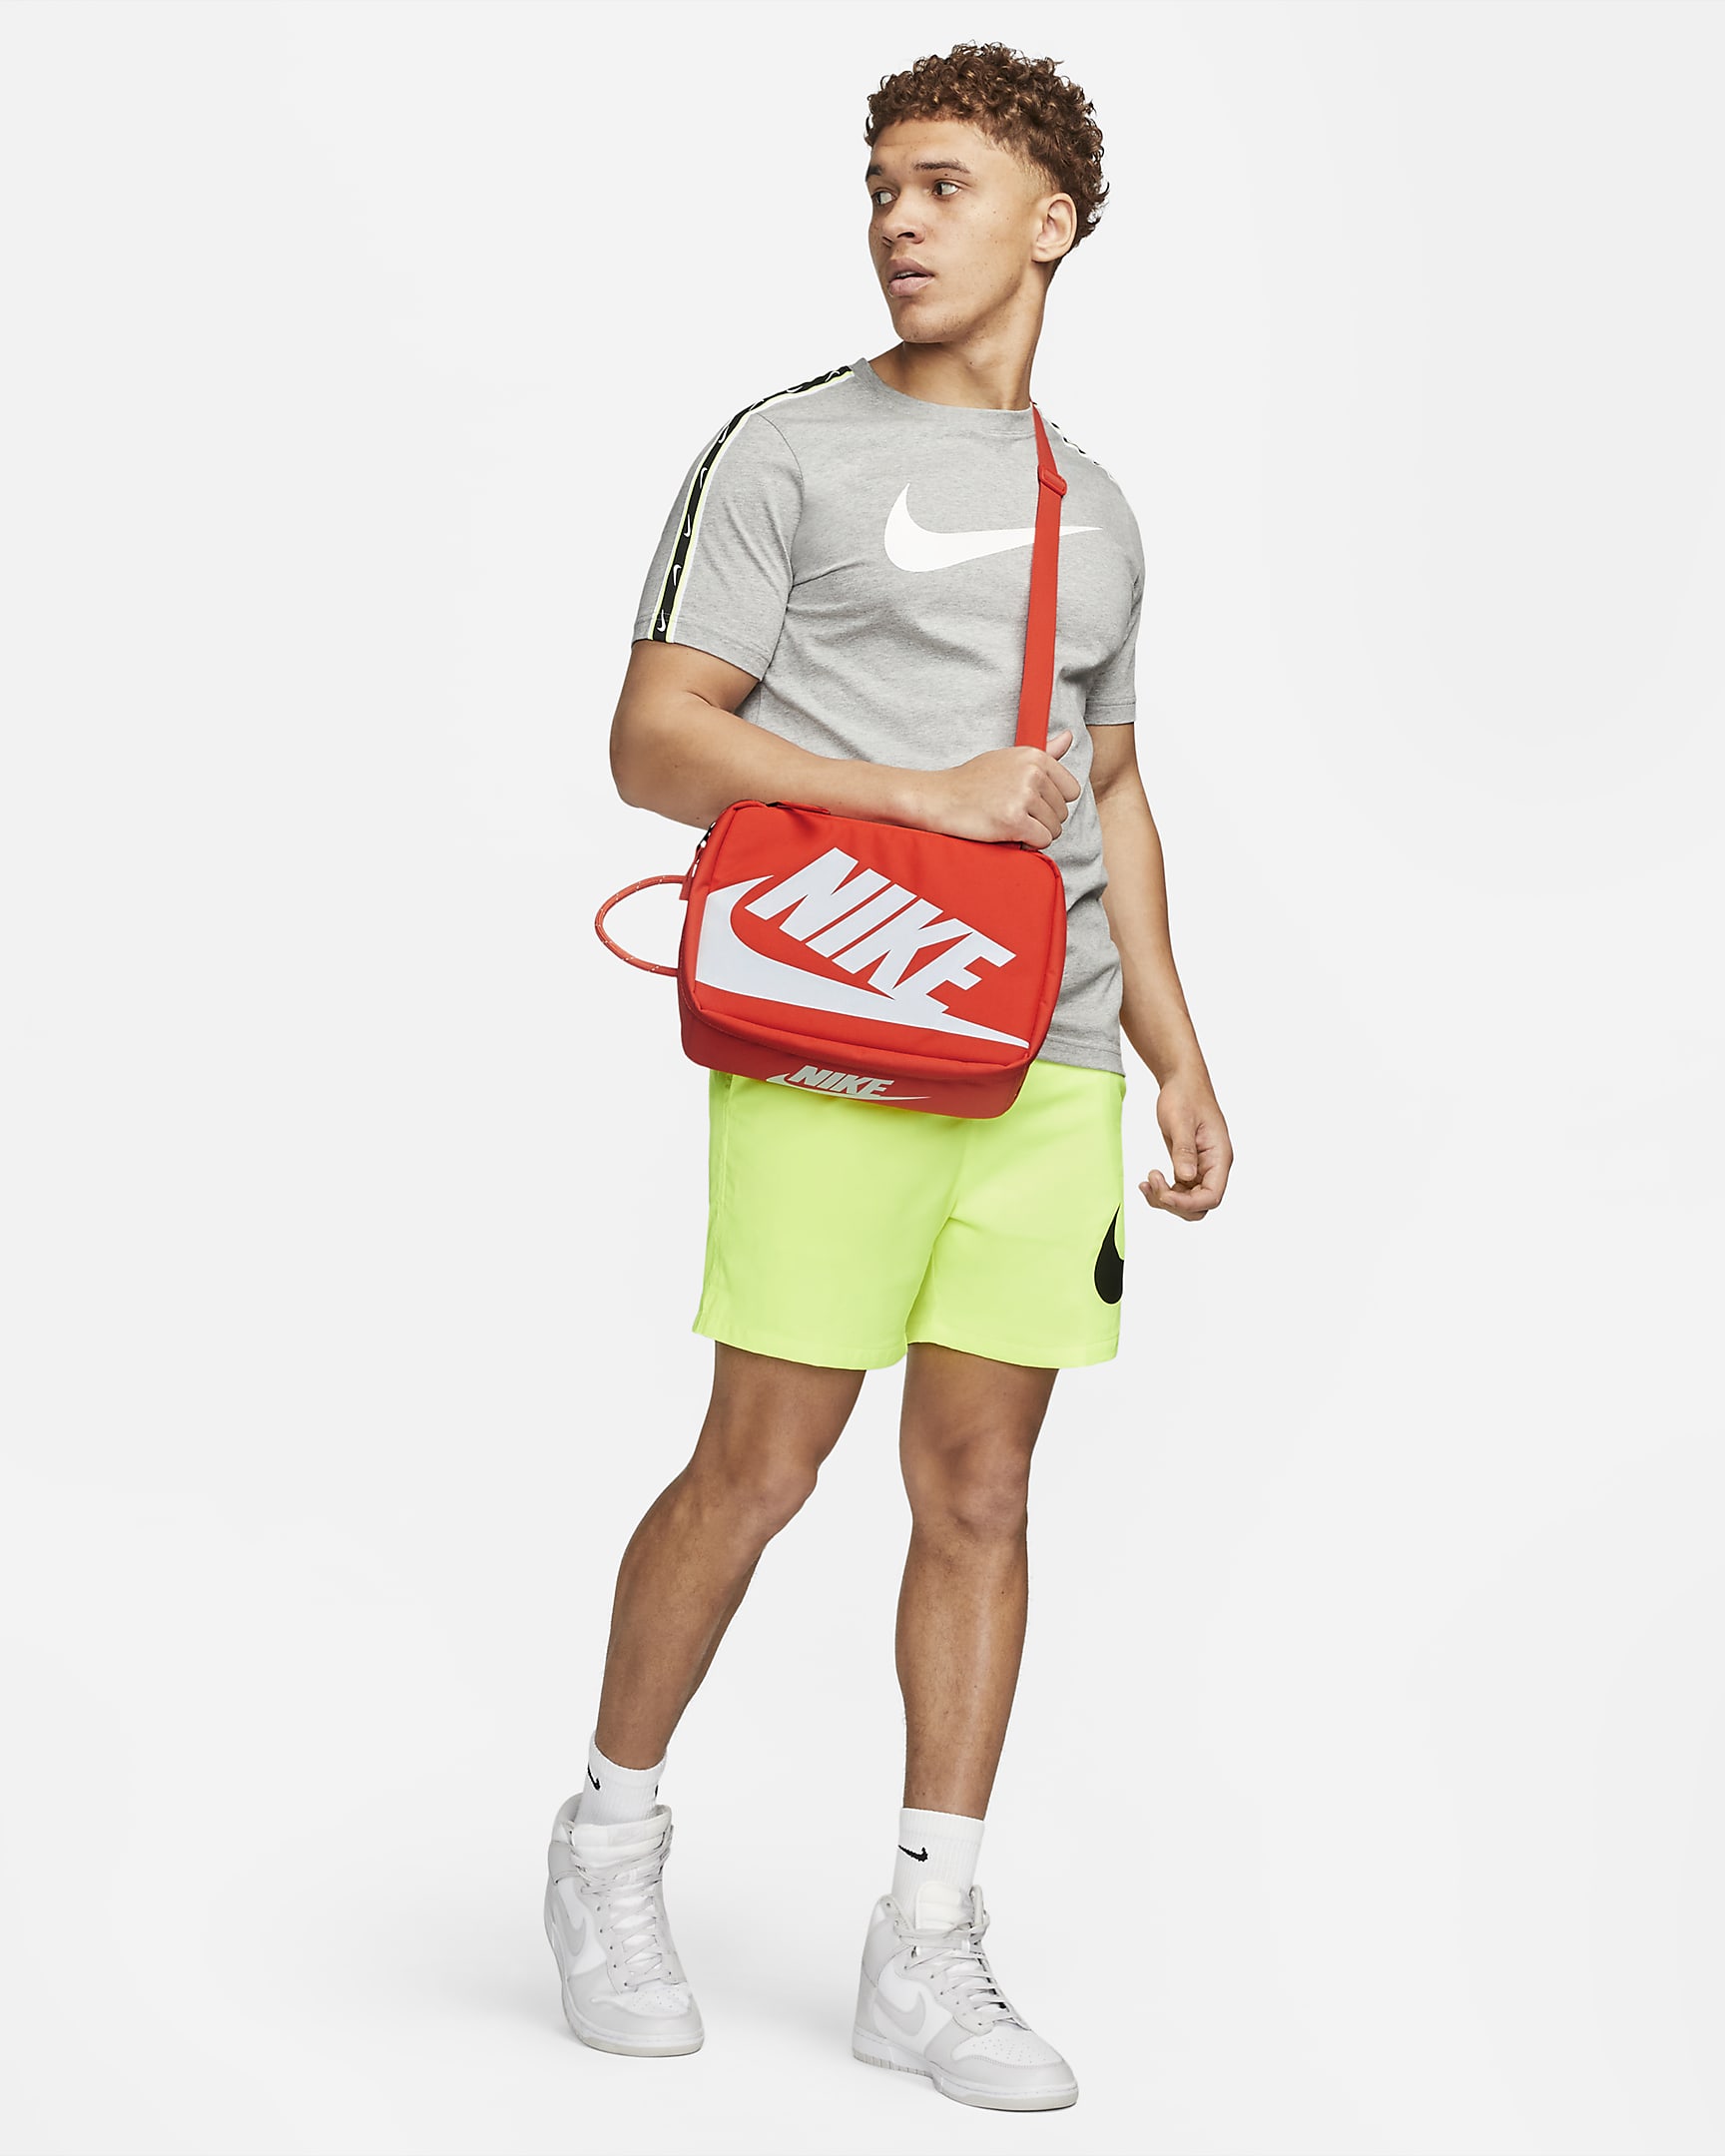 Nike schoenendoostas (small, 8 liter) - Oranje/Oranje/Wit